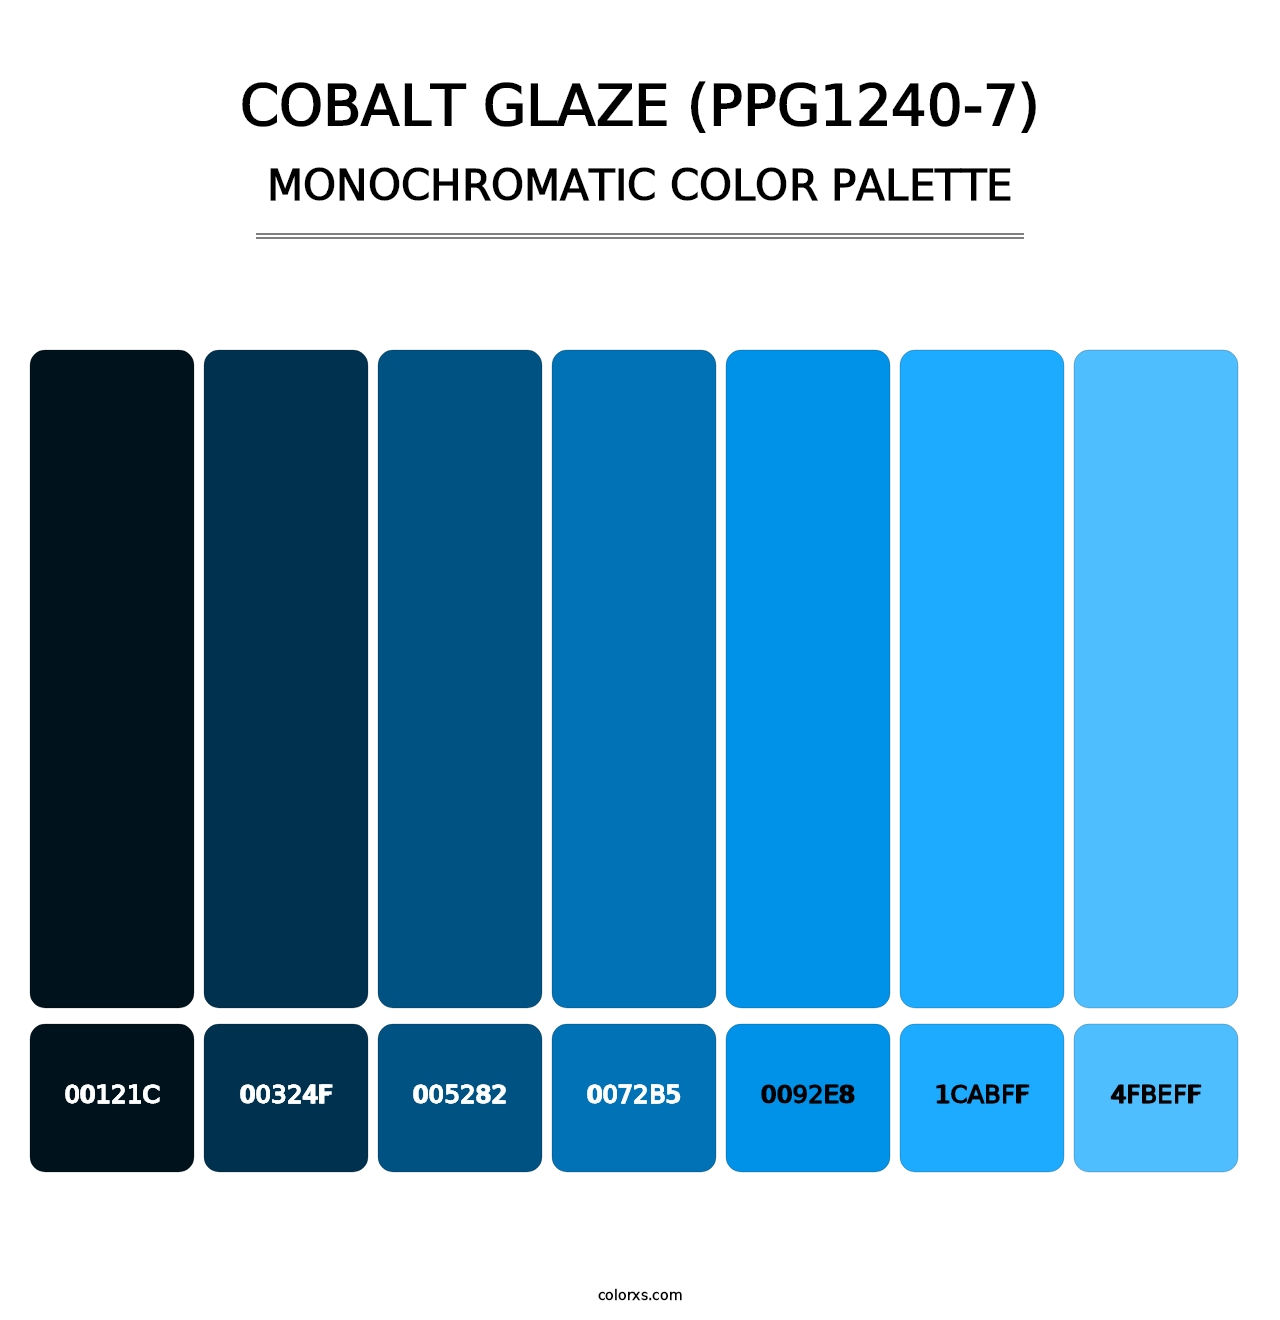 Cobalt Glaze (PPG1240-7) - Monochromatic Color Palette